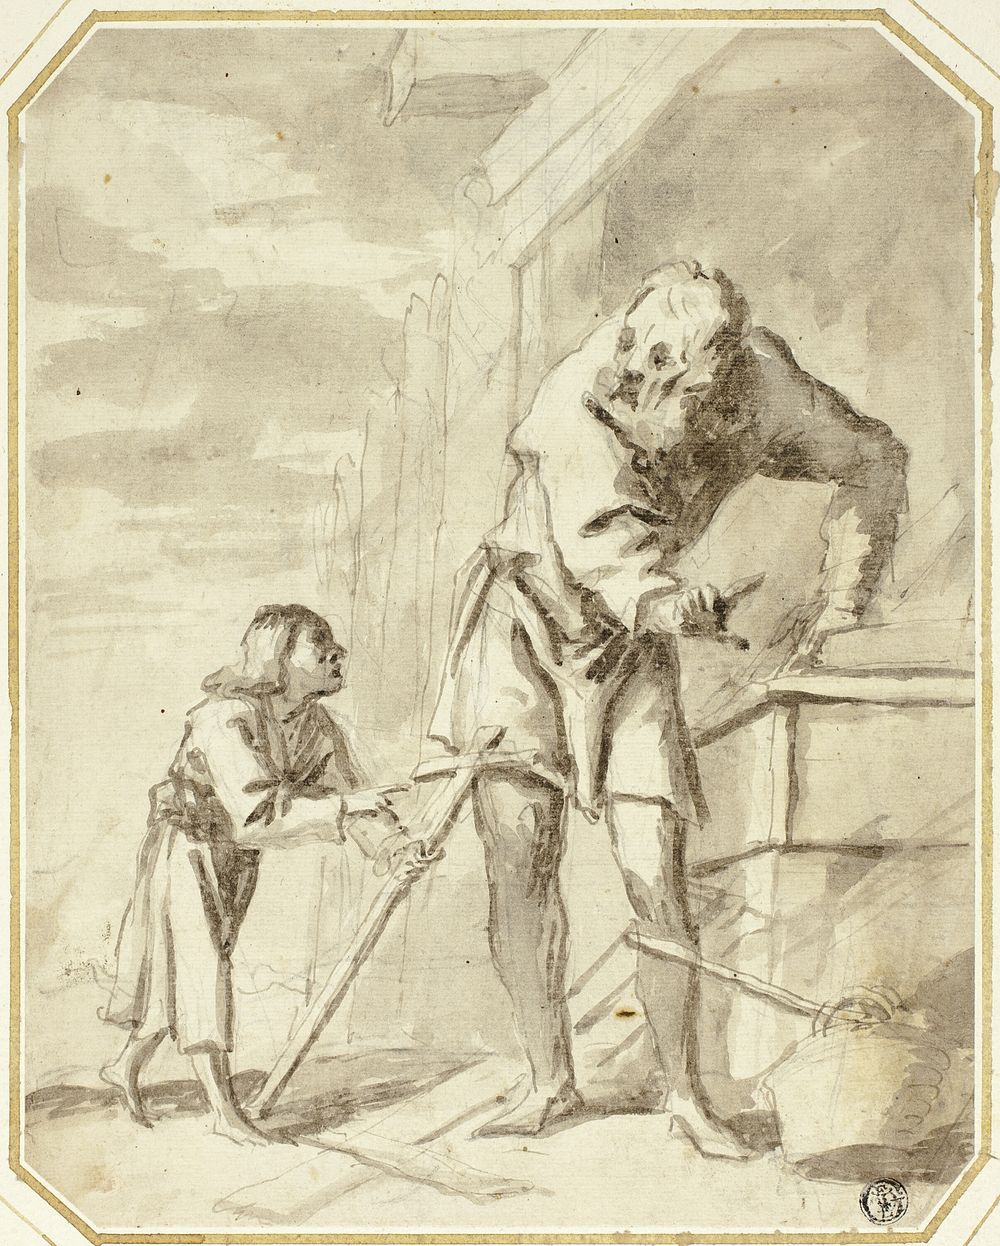 Saint Joseph with the Child Jesus in his Carpentry Shop by Pietro della Vecchia